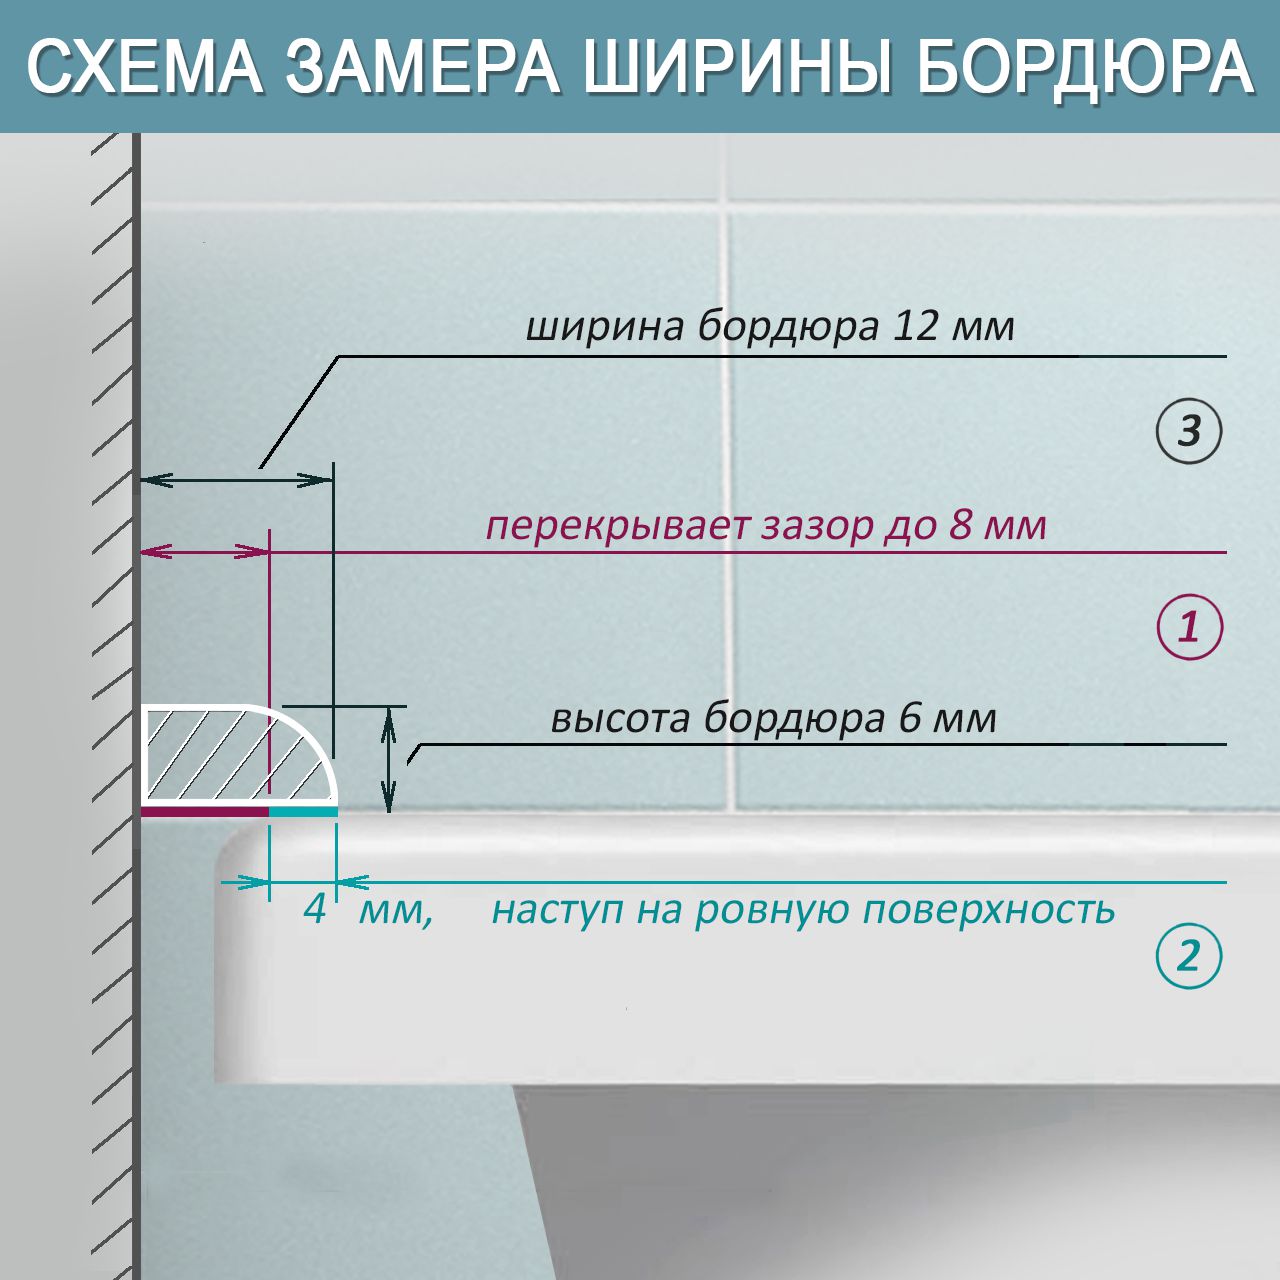 Комплект акриловых бордюров для ванной СВ12 интернет-магазин BNV